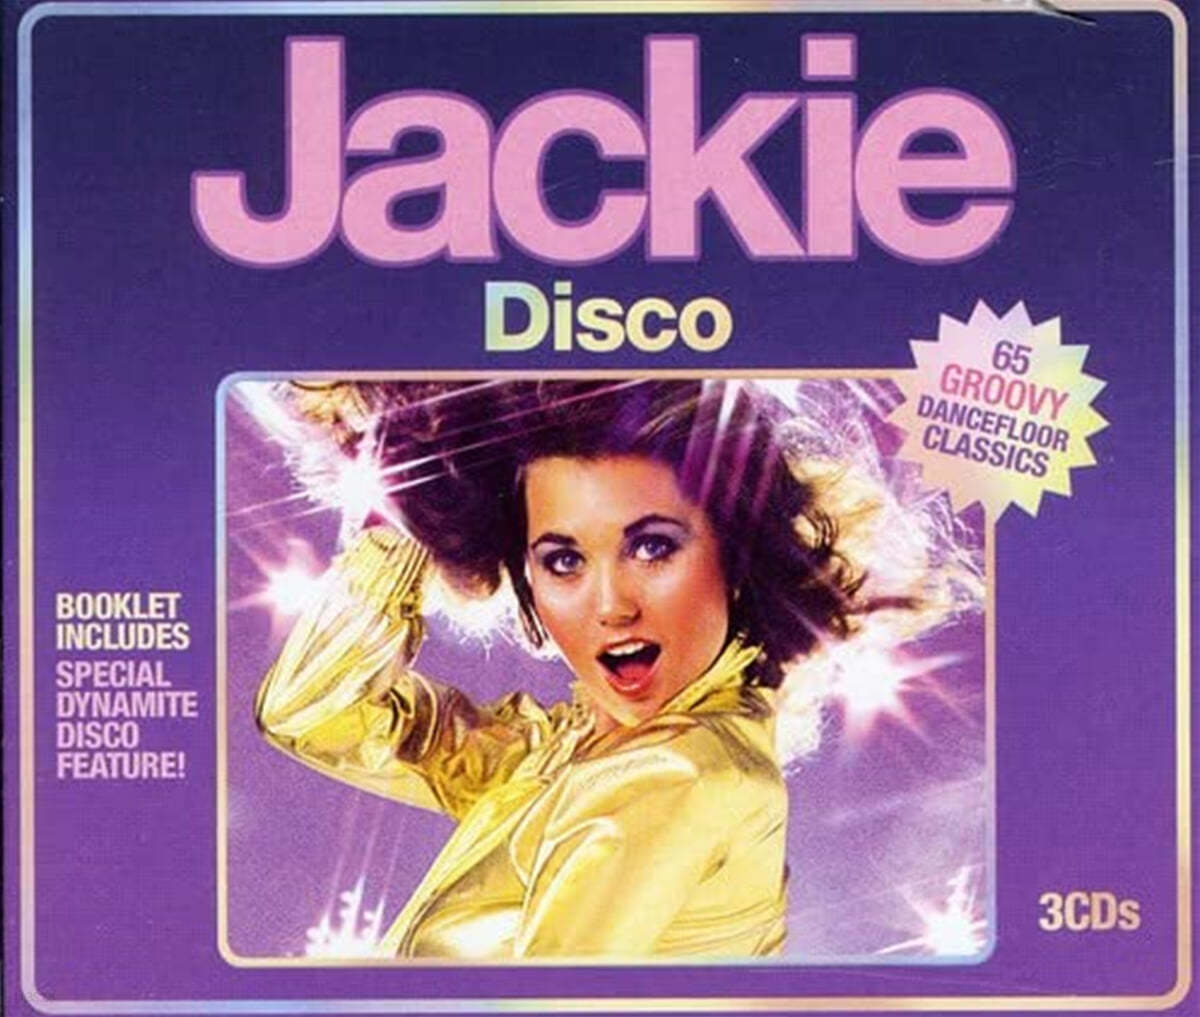 65곡의 디스코 댄스 음악 모음집 Jackie Disco: 65 Groovy Dancefloor Classics 